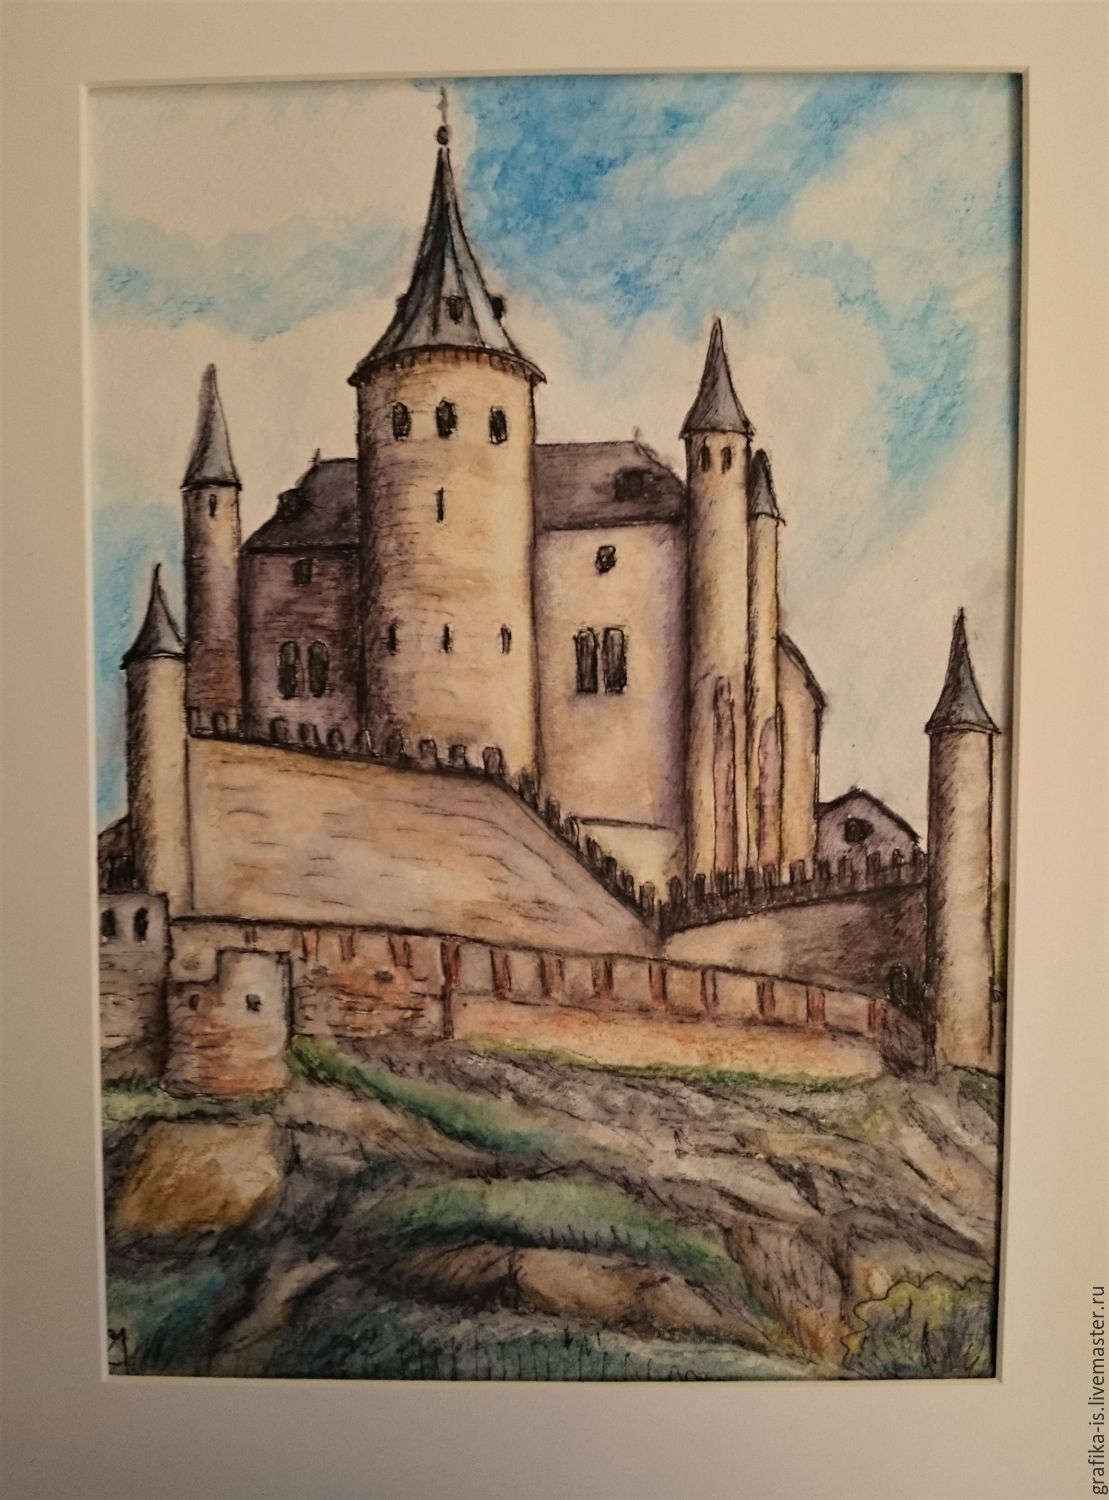 Старая крепость рисунок город. Замок Алькасар в романском стиле. Замок в романском стиле рисунок. Романский замок средневековья рисунок. Старый замок рисунок.